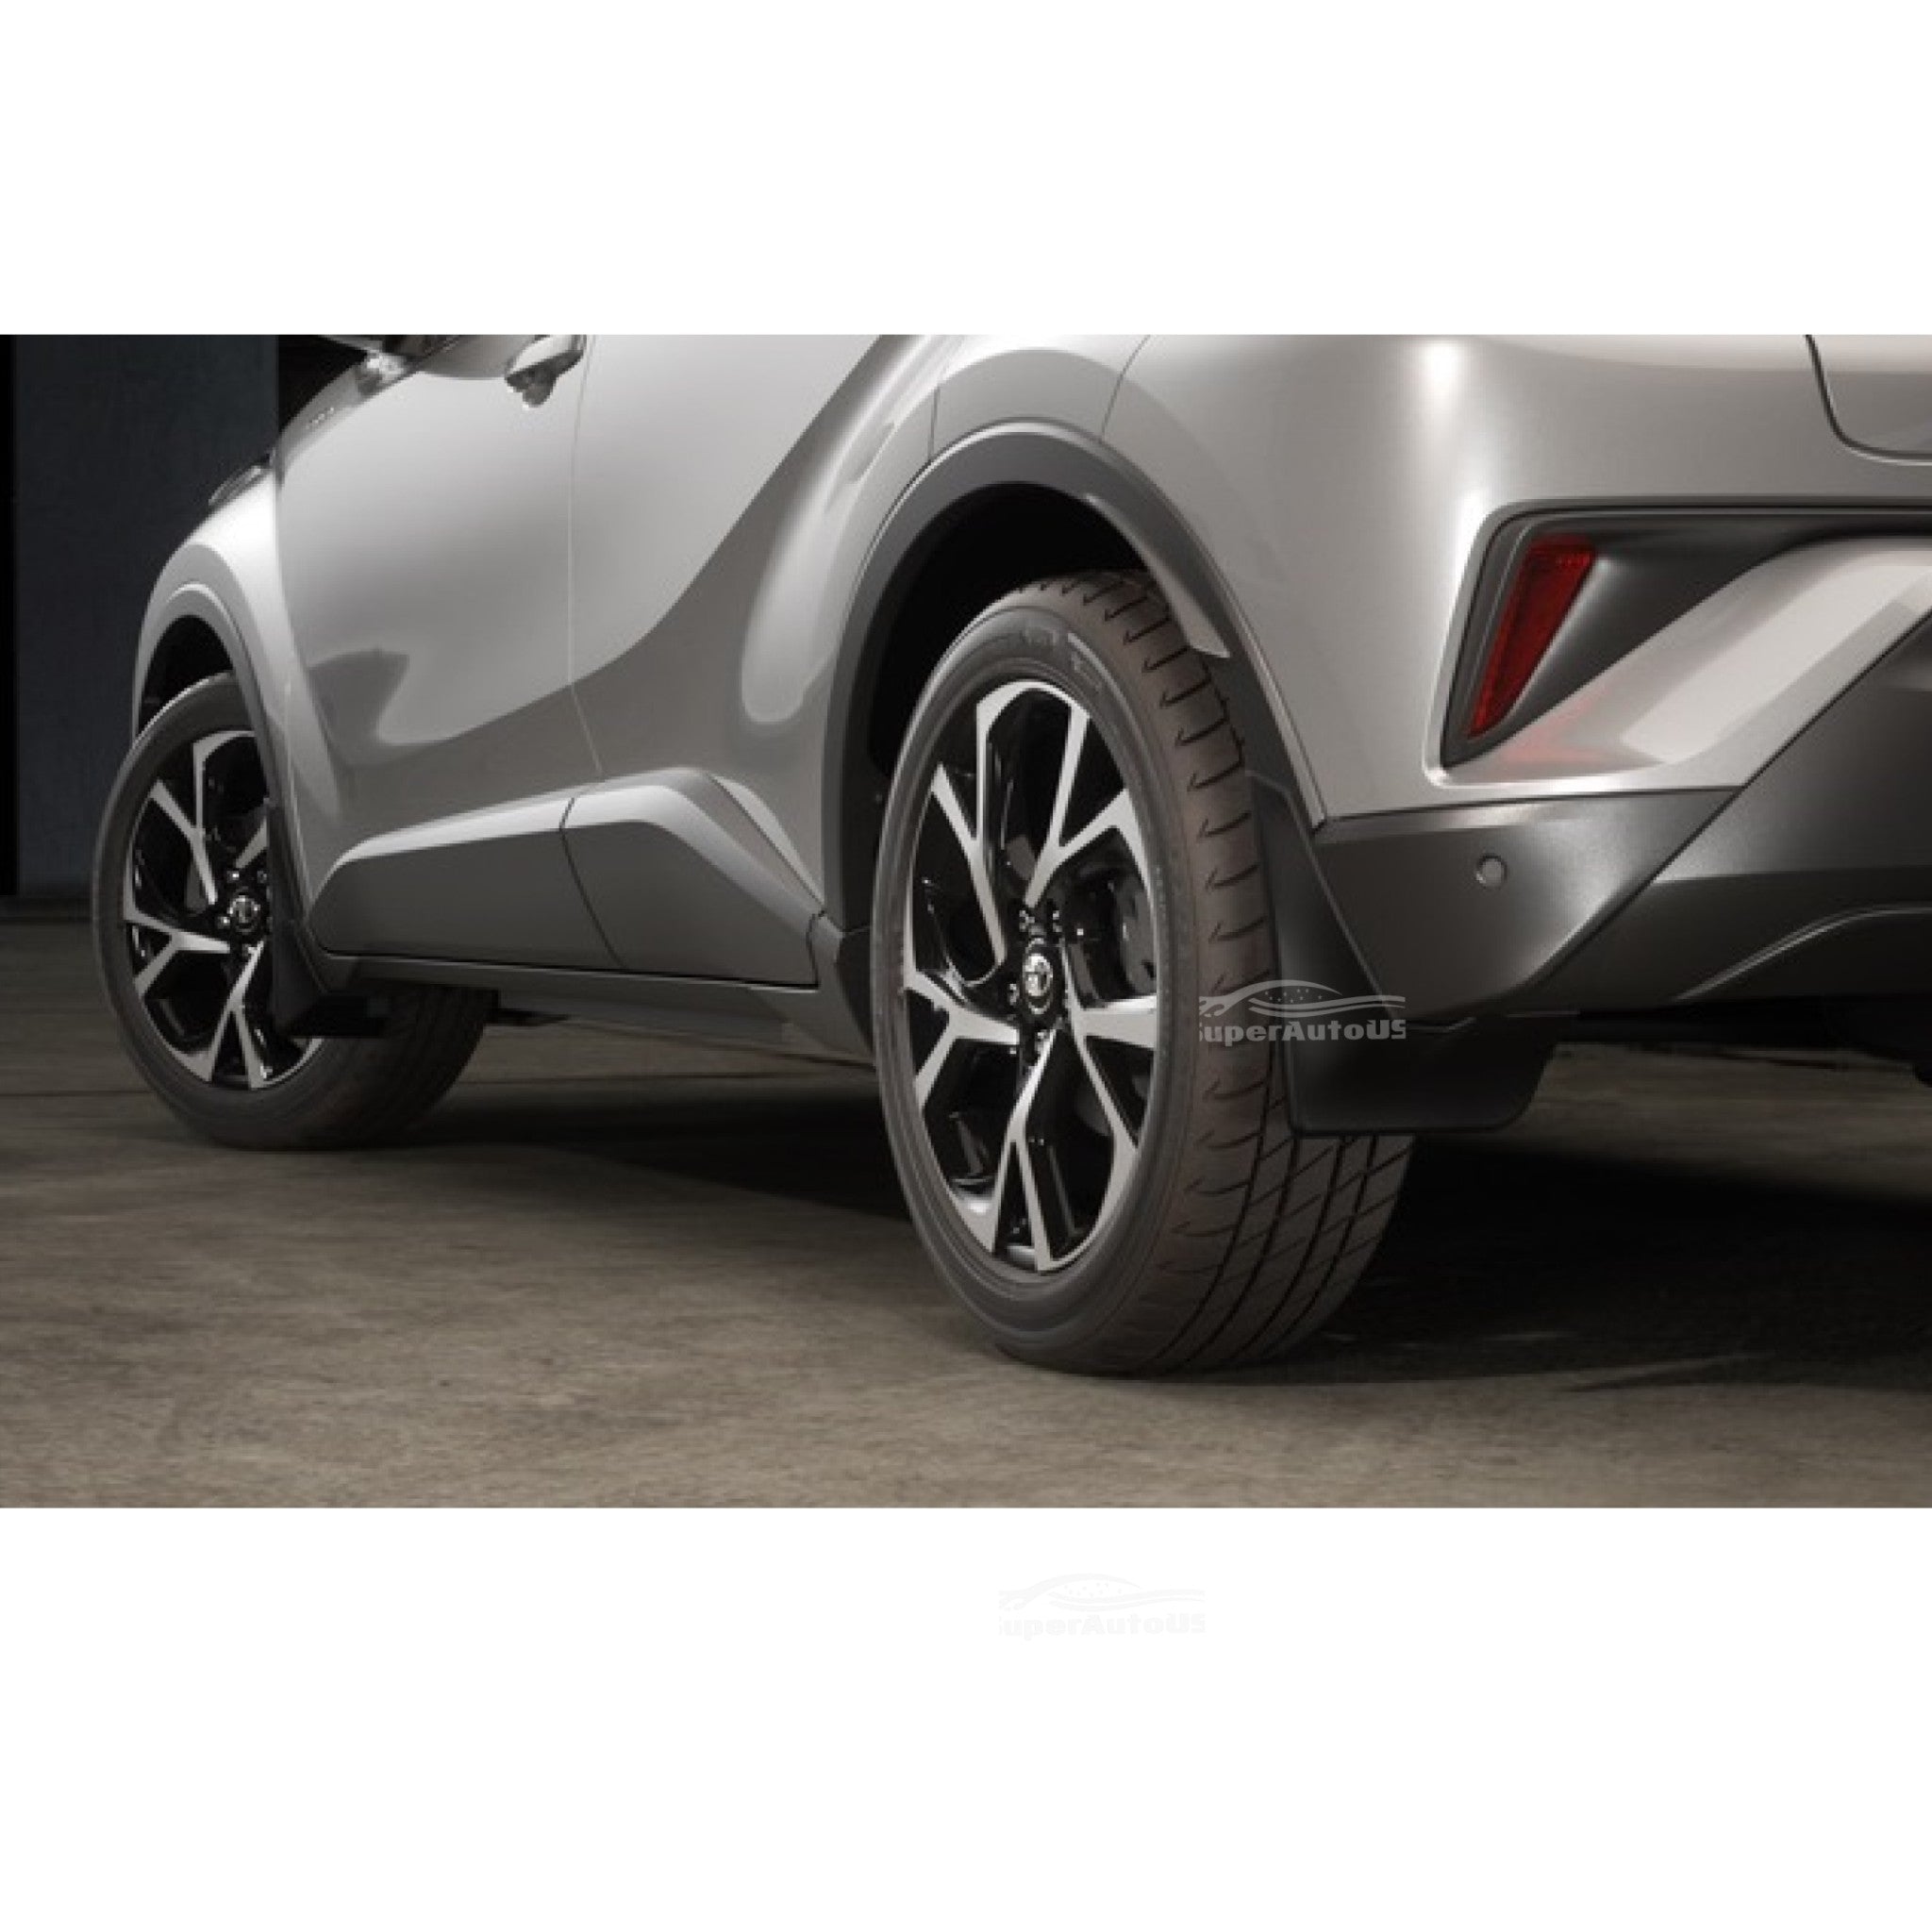 Ajuste 2018-2021 Toyota C-HR CHR 4 piezas Negro Mud Flaps Guardabarros Dirt Fender Cover Set